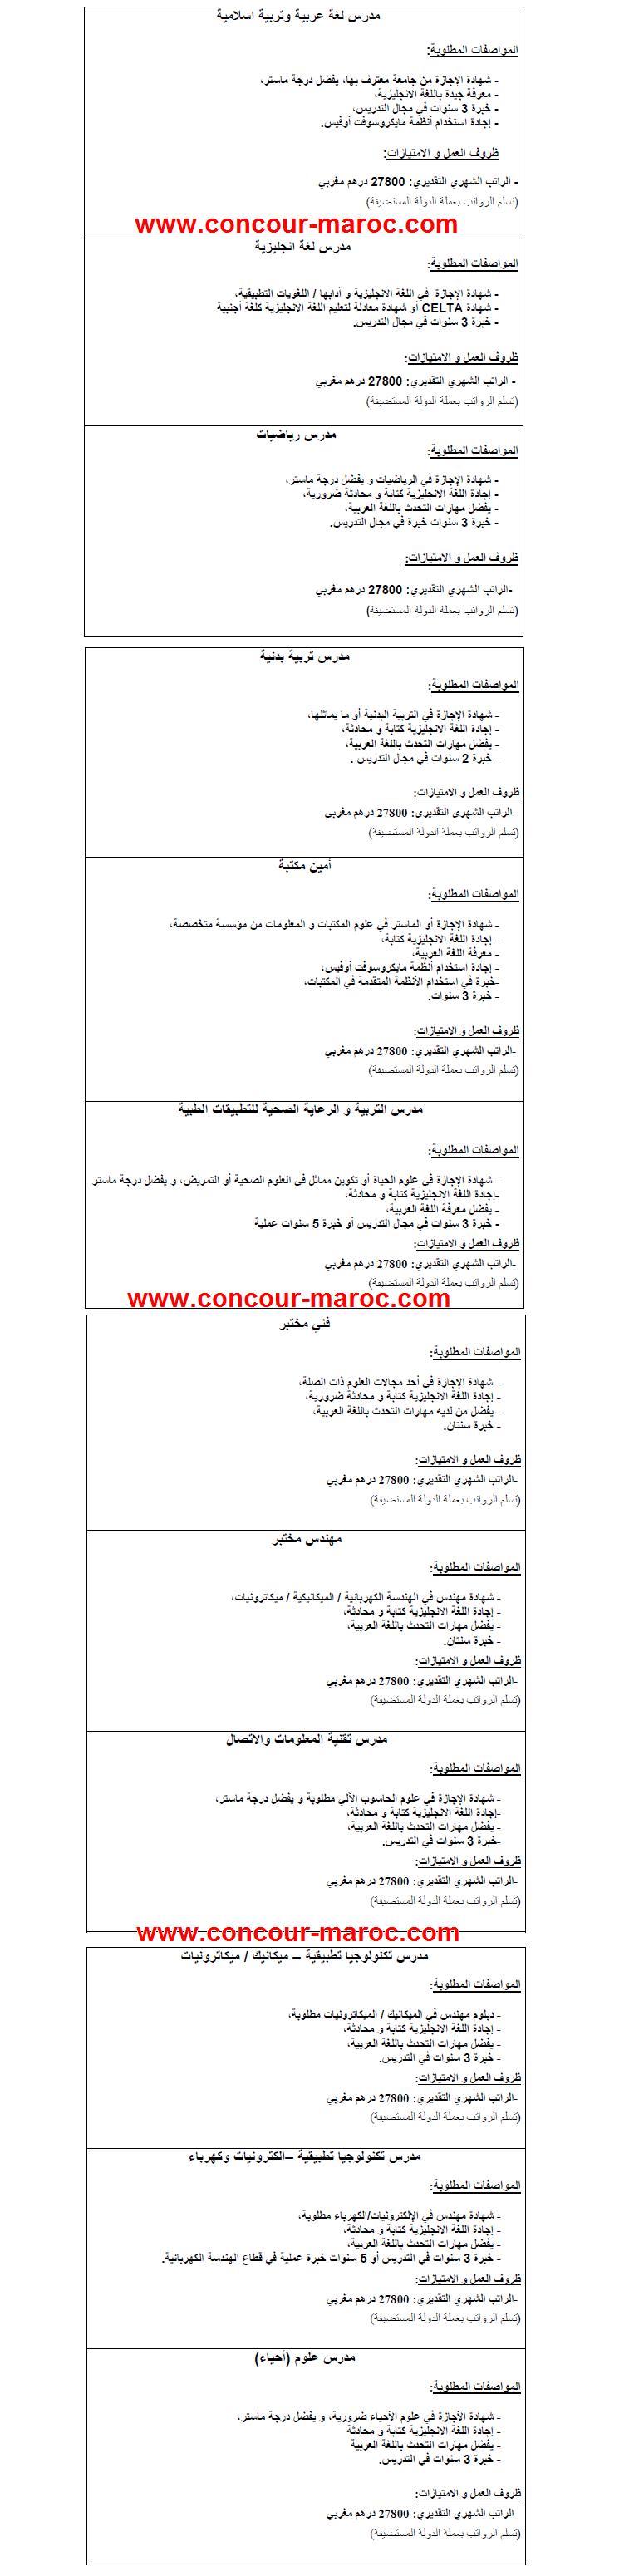 ANAPEC : مؤسسة في مجال التكنولوجيا التطبيقية بإحدى دول مجلس التعاون الخليجي تشغل مدرسين في التخصصات متعددة و أمين مكتبة من المغرب اخر اجل لتقديم الترشيحات يوم 03 أبريل 2013 Conco133